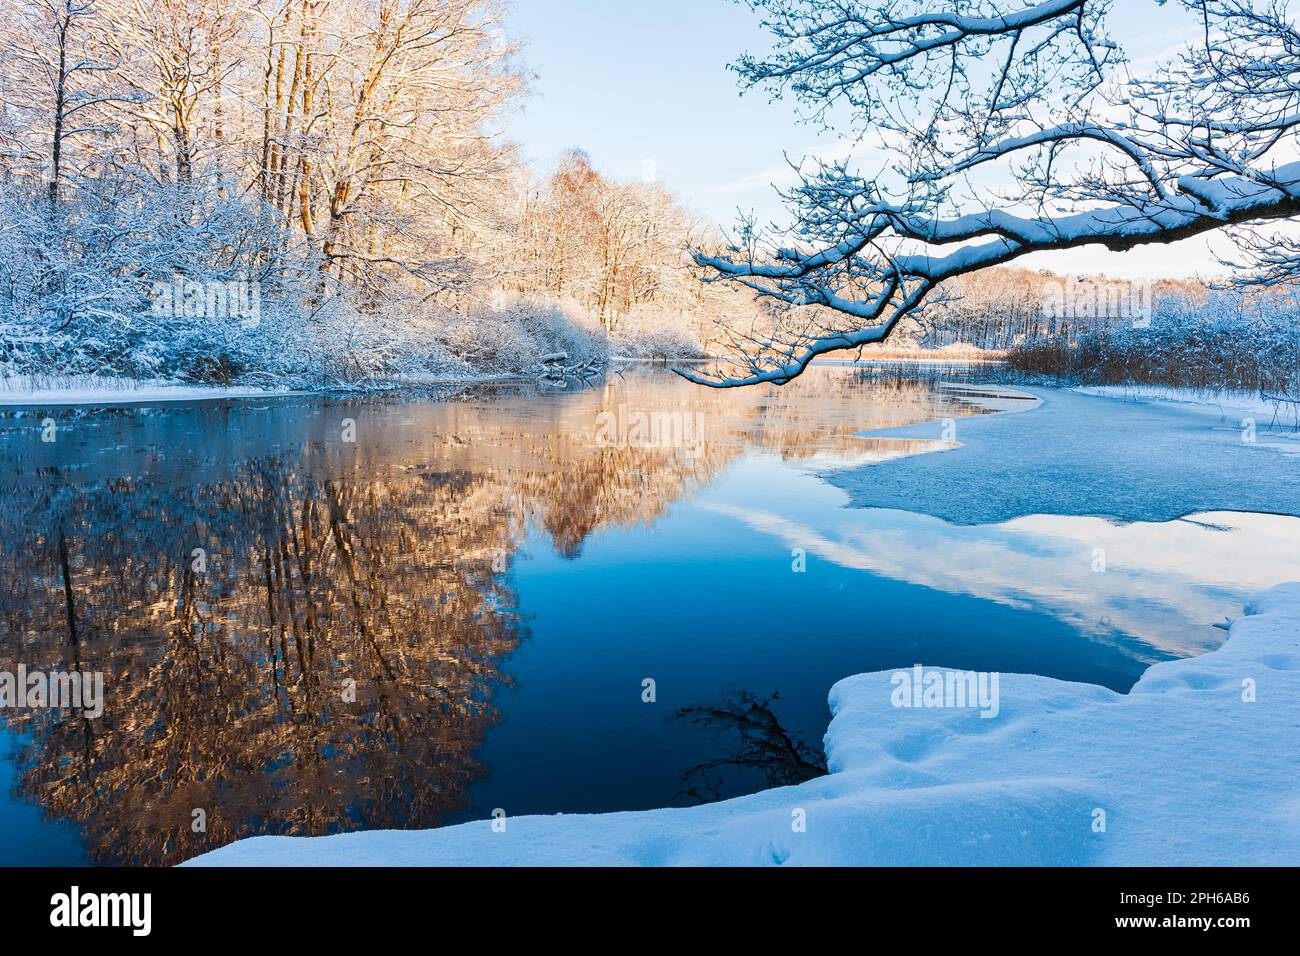 Eine ruhige Winterszene mit einem gefrorenen Fluss, der den eisigen blauen Himmel reflektiert, umgeben von schneebedeckten Bäumen in Mölndal, Schweden. Stockfoto